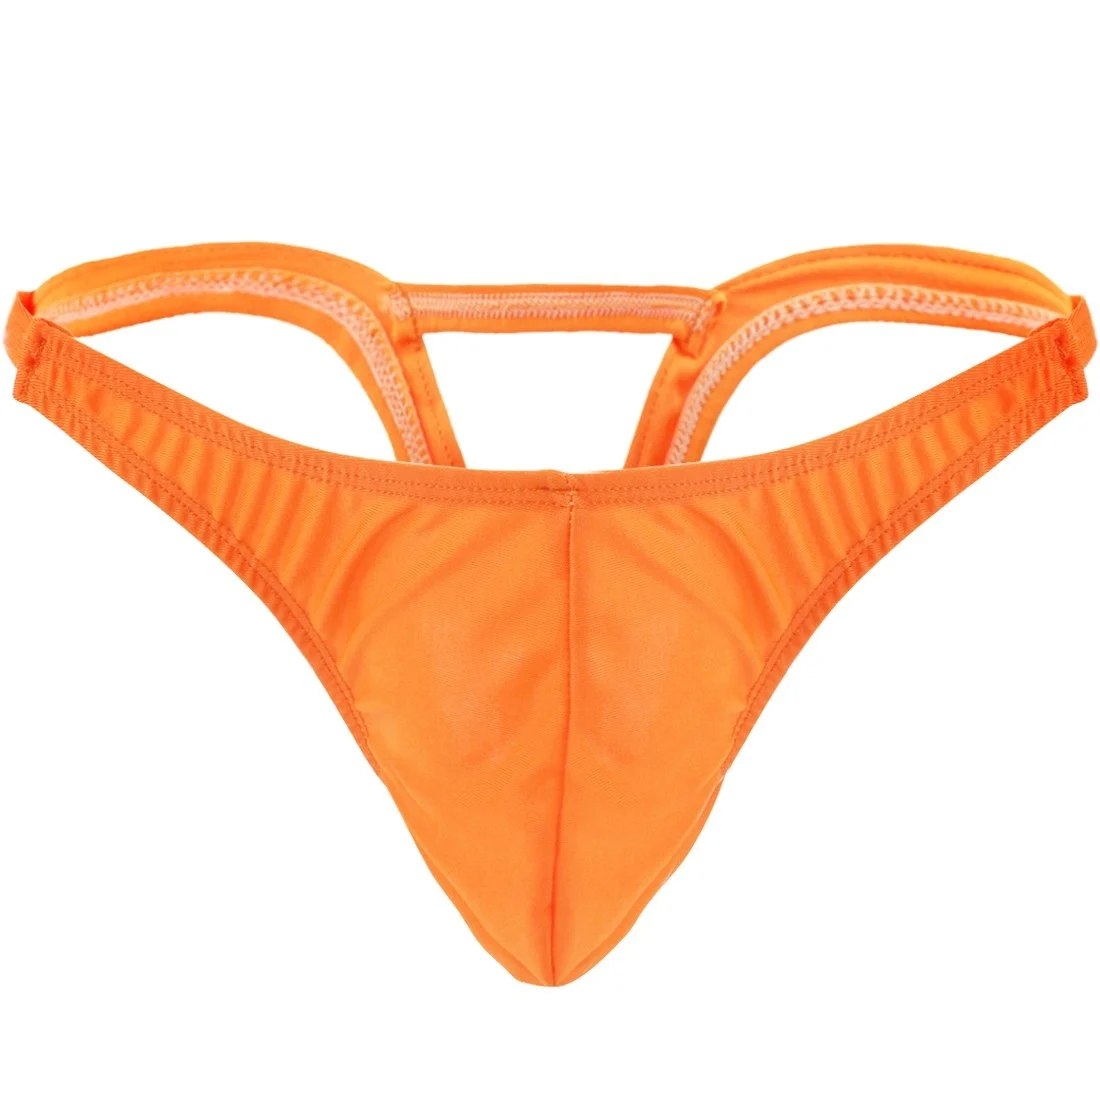 Гей купальники мужские гей купальники выпуклый мешок нижнее белье стринги короткие шорты с перевернутым треугольником сзади купальник трусики - Цвет: Orange